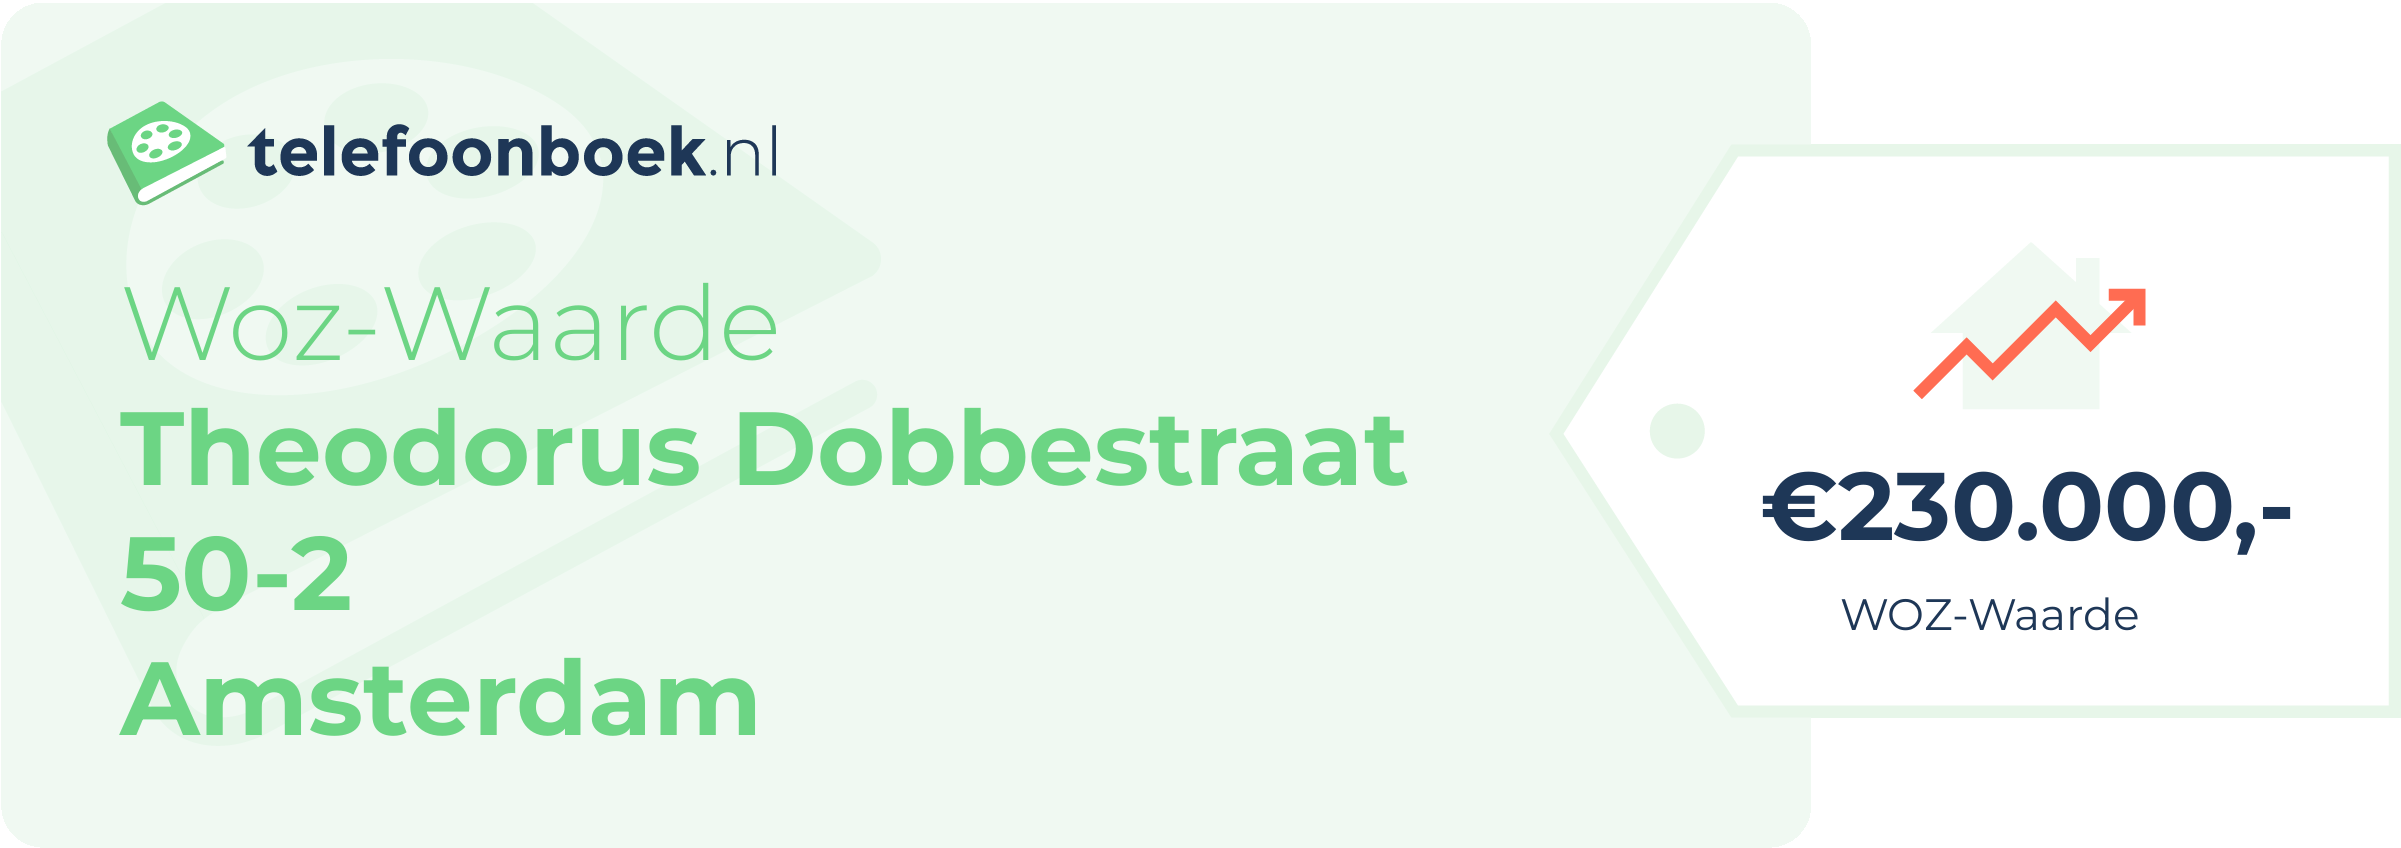 WOZ-waarde Theodorus Dobbestraat 50-2 Amsterdam